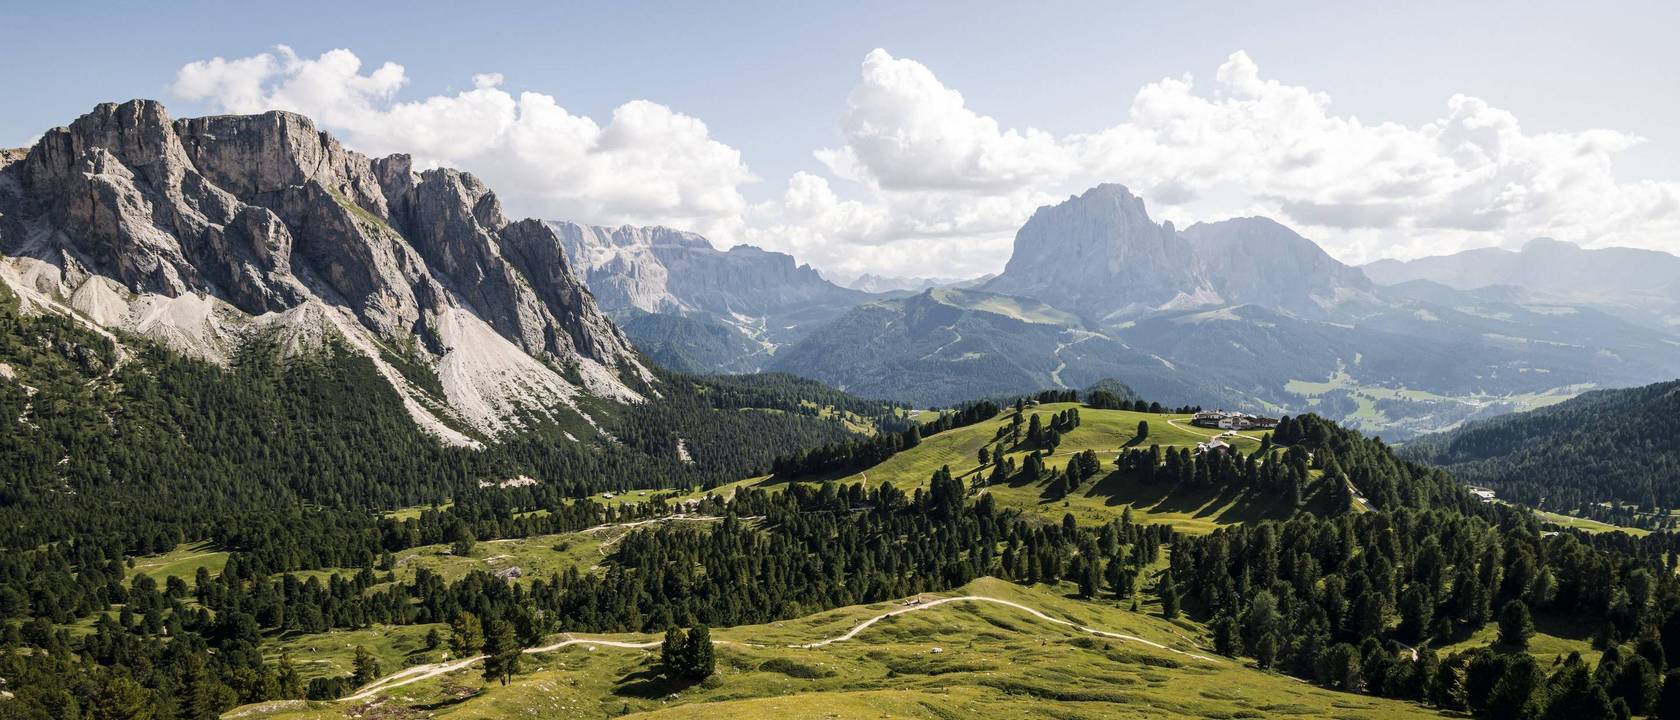 Family hotel nelle Dolomiti: una vacanza nel regno dei Monti Pallidi